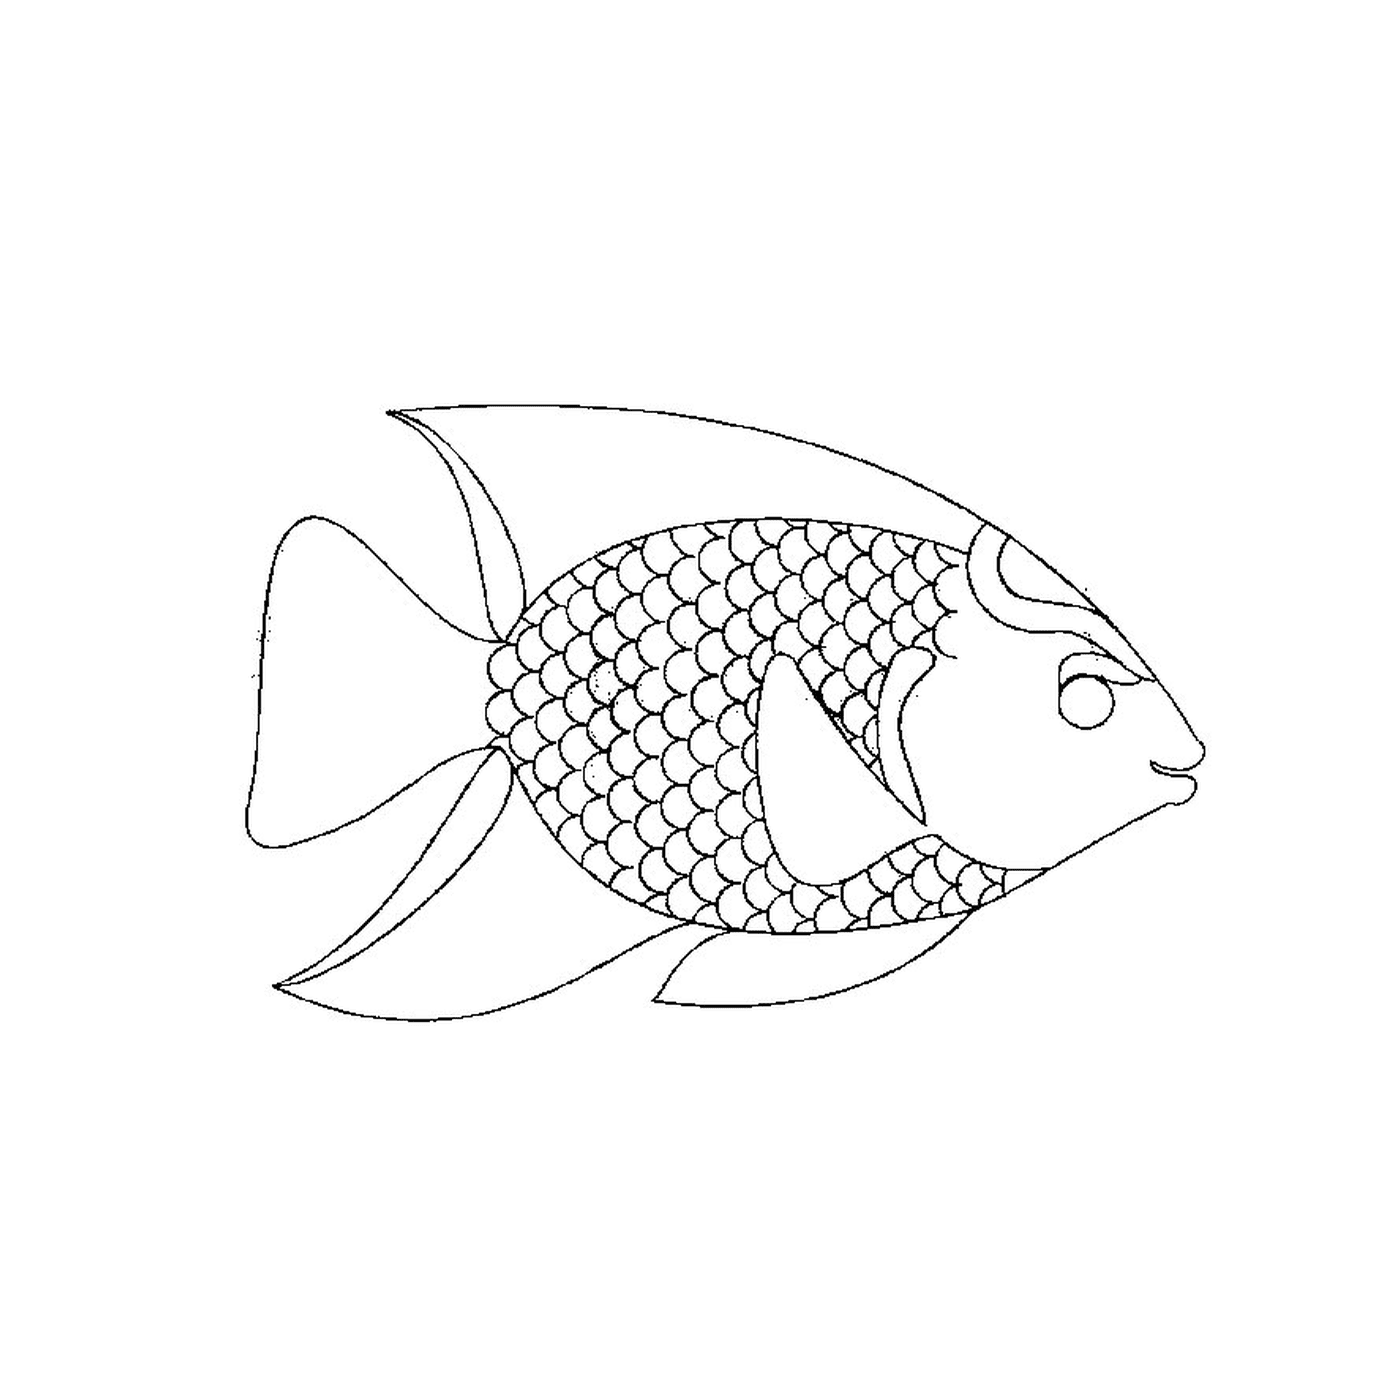   Présence d'un poisson aux couleurs vives 